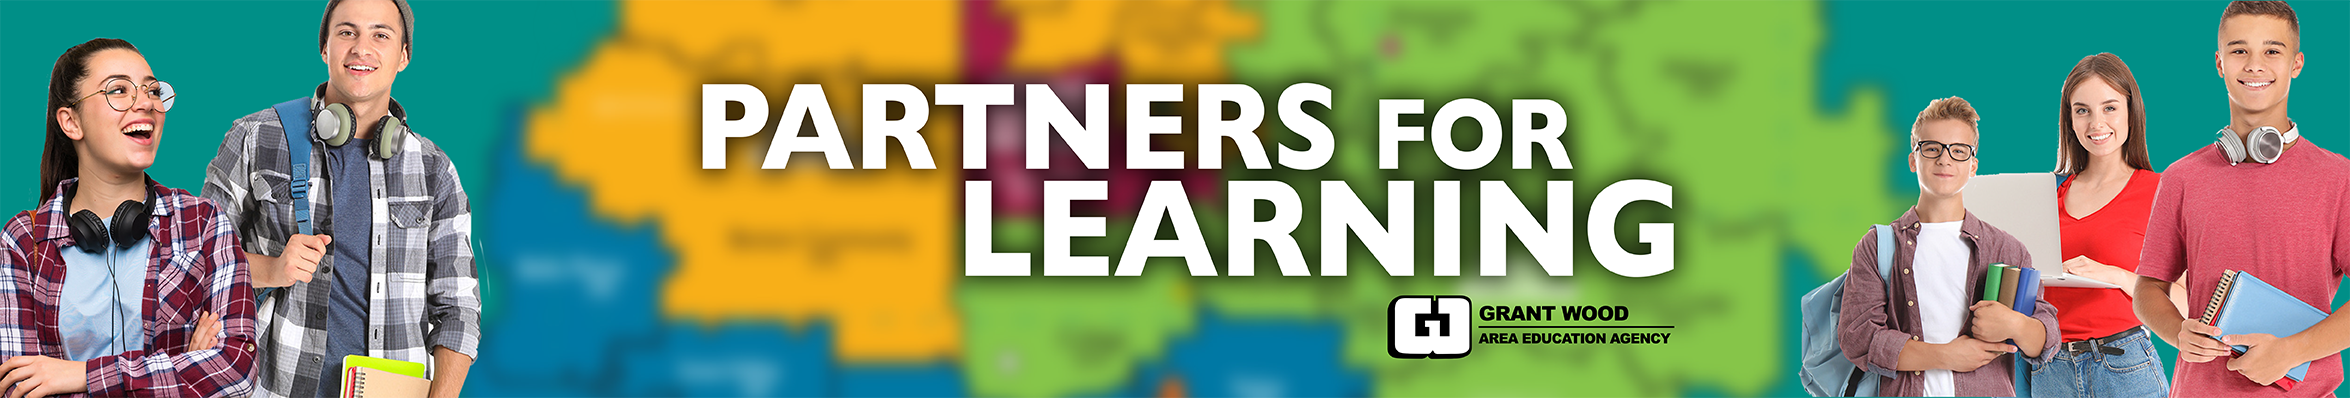 Partners for Learning Social Banner 3